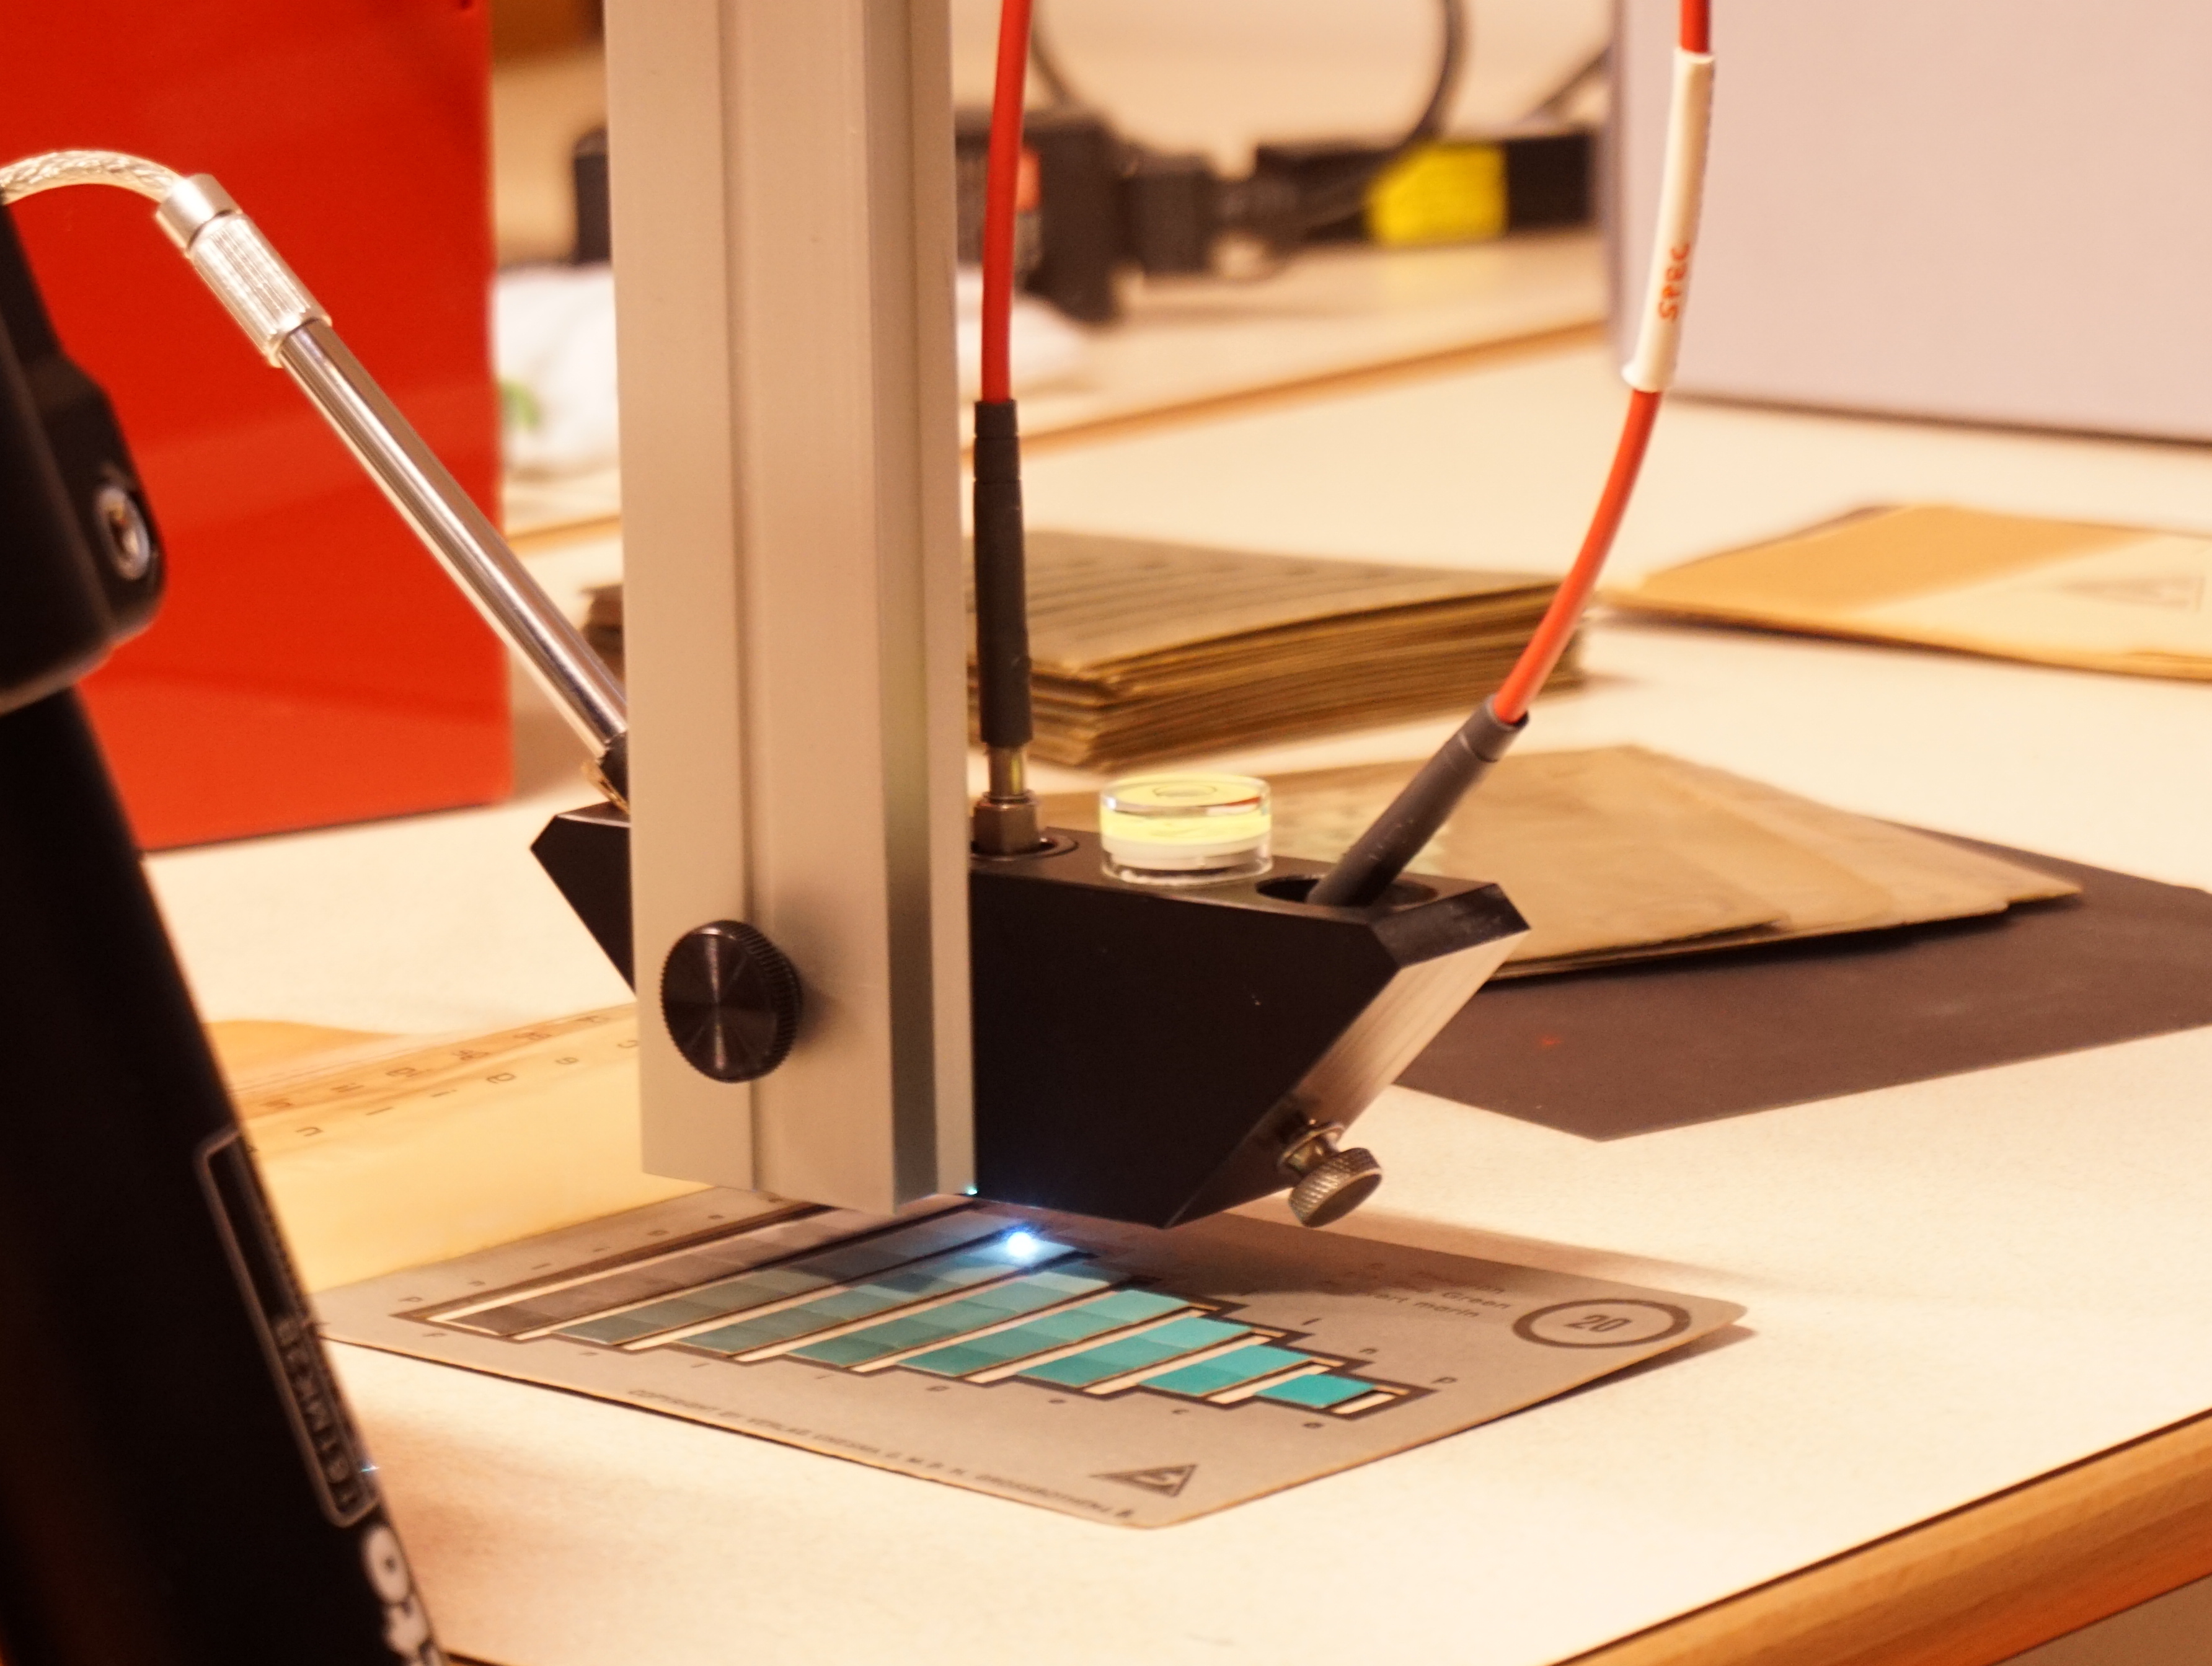 Micofading-Test-System im Einsatz bei der Lichtechtheitsbestimmung an einer Farbkarte